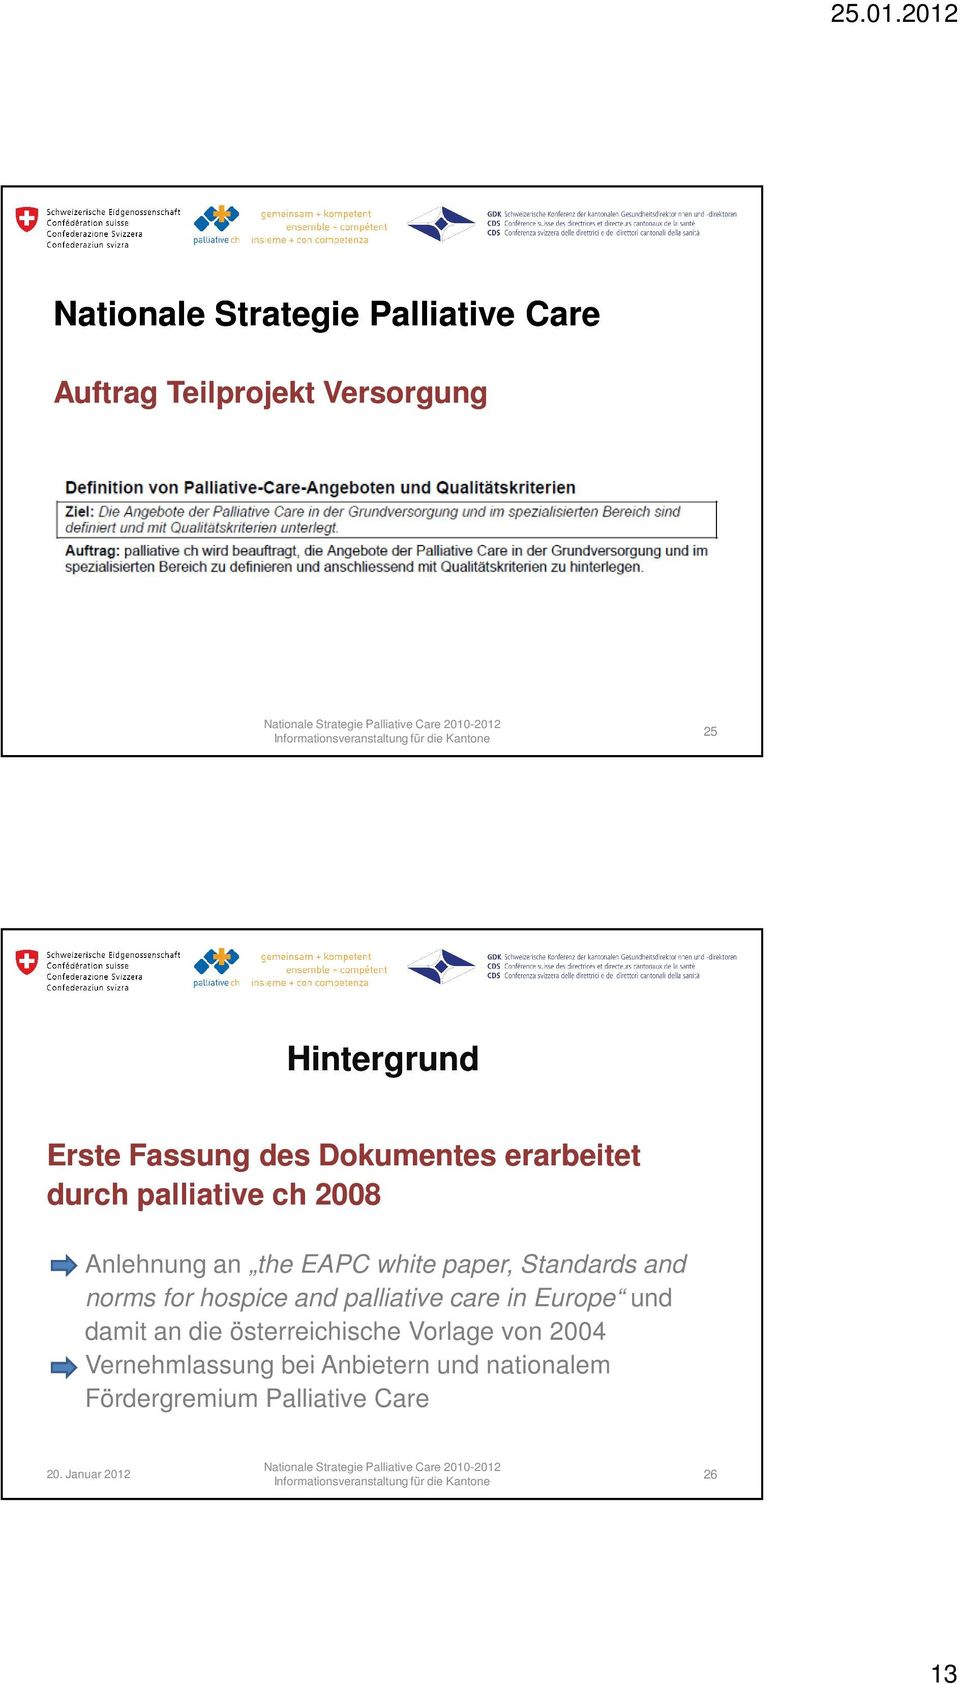 and norms for hospice and palliative care in Europe und damit an die österreichische Vorlage von